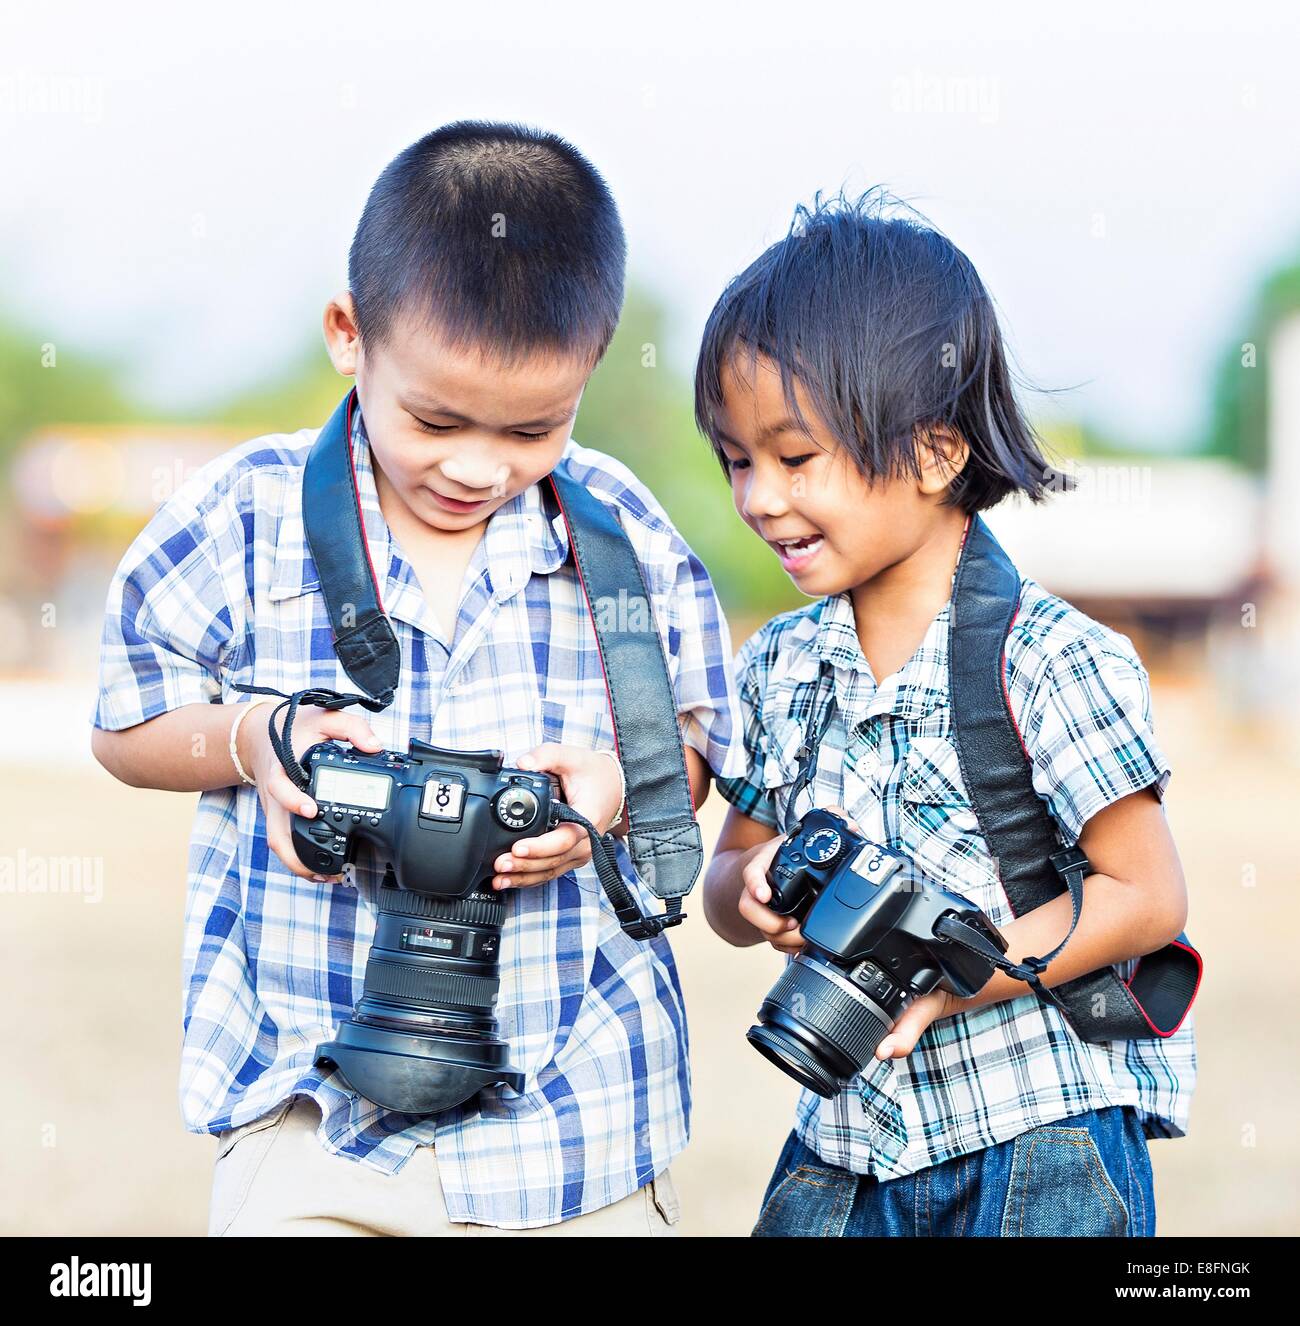 Two boys taking photos on dSLR cameras, New Delhi, India Stock Photo